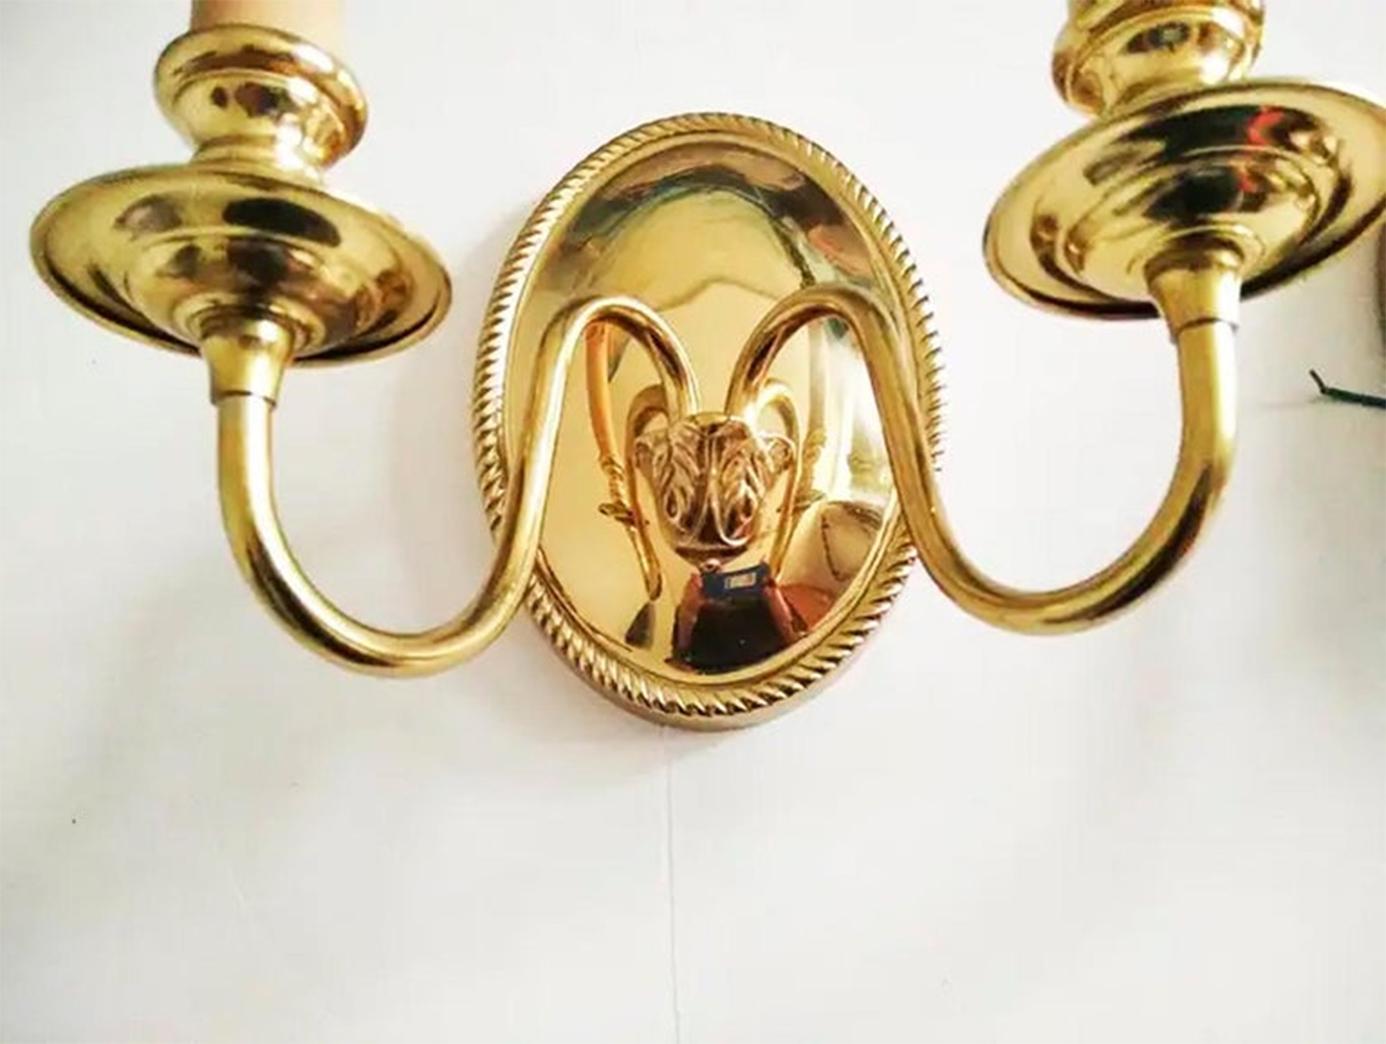 Paar elegante Wandlampen aus goldenem Messing im Louis XVI-Stil
Sie sind elegant und passen in jeden Raum. Wenn Sie möchten, können Sie ihnen ein PanatLla hinzufügen.
Sein Zustand ist fast perfekt, fast wie neu.
Ideal als Wandlampen für einen Flur